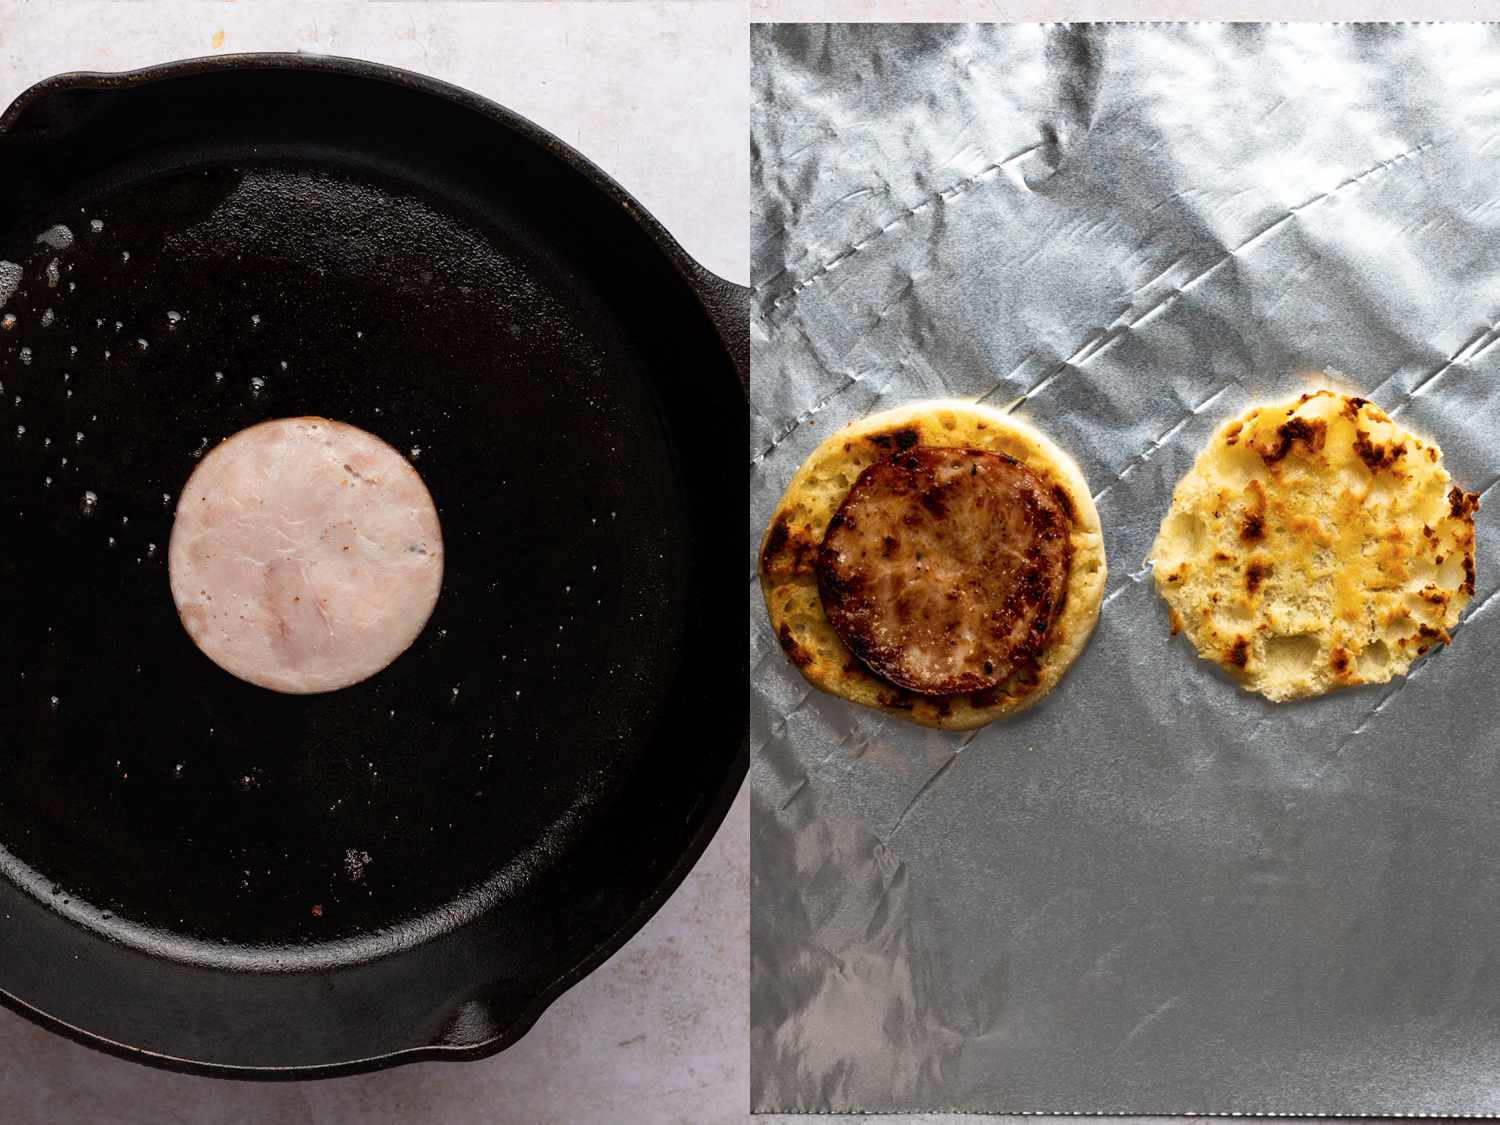 两幅图像的拼贴画。左图显示的是一片加拿大培根正在铸铁煎锅中烹饪。右图显示的是已经变成棕色的加拿大培根，放在烤过的、一分为二的英式松饼的左半部分上面，放在铝箔纸上。